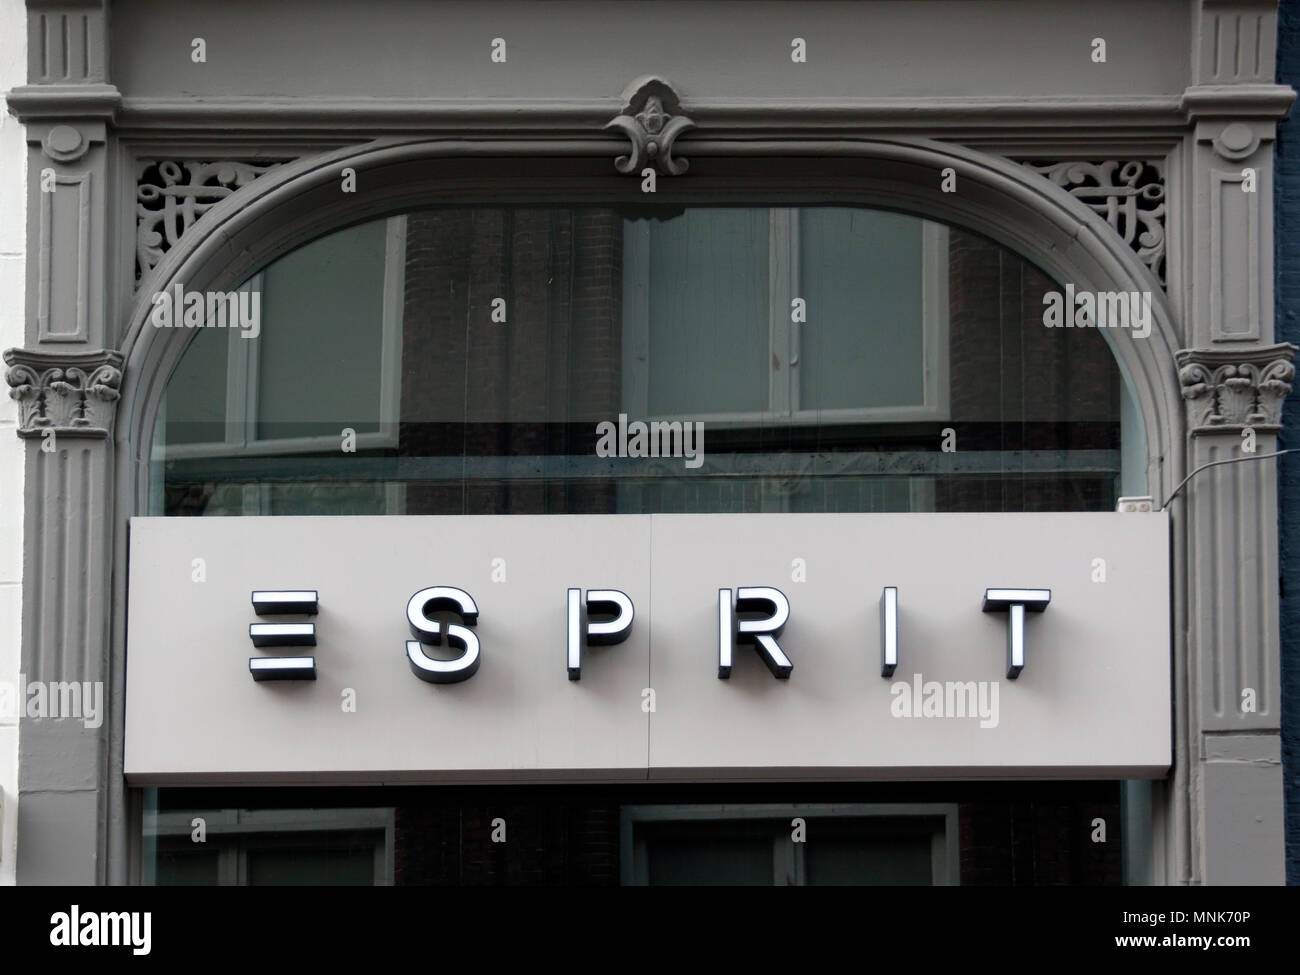 Esprit shop -Fotos und -Bildmaterial in hoher Auflösung - Seite 2 - Alamy